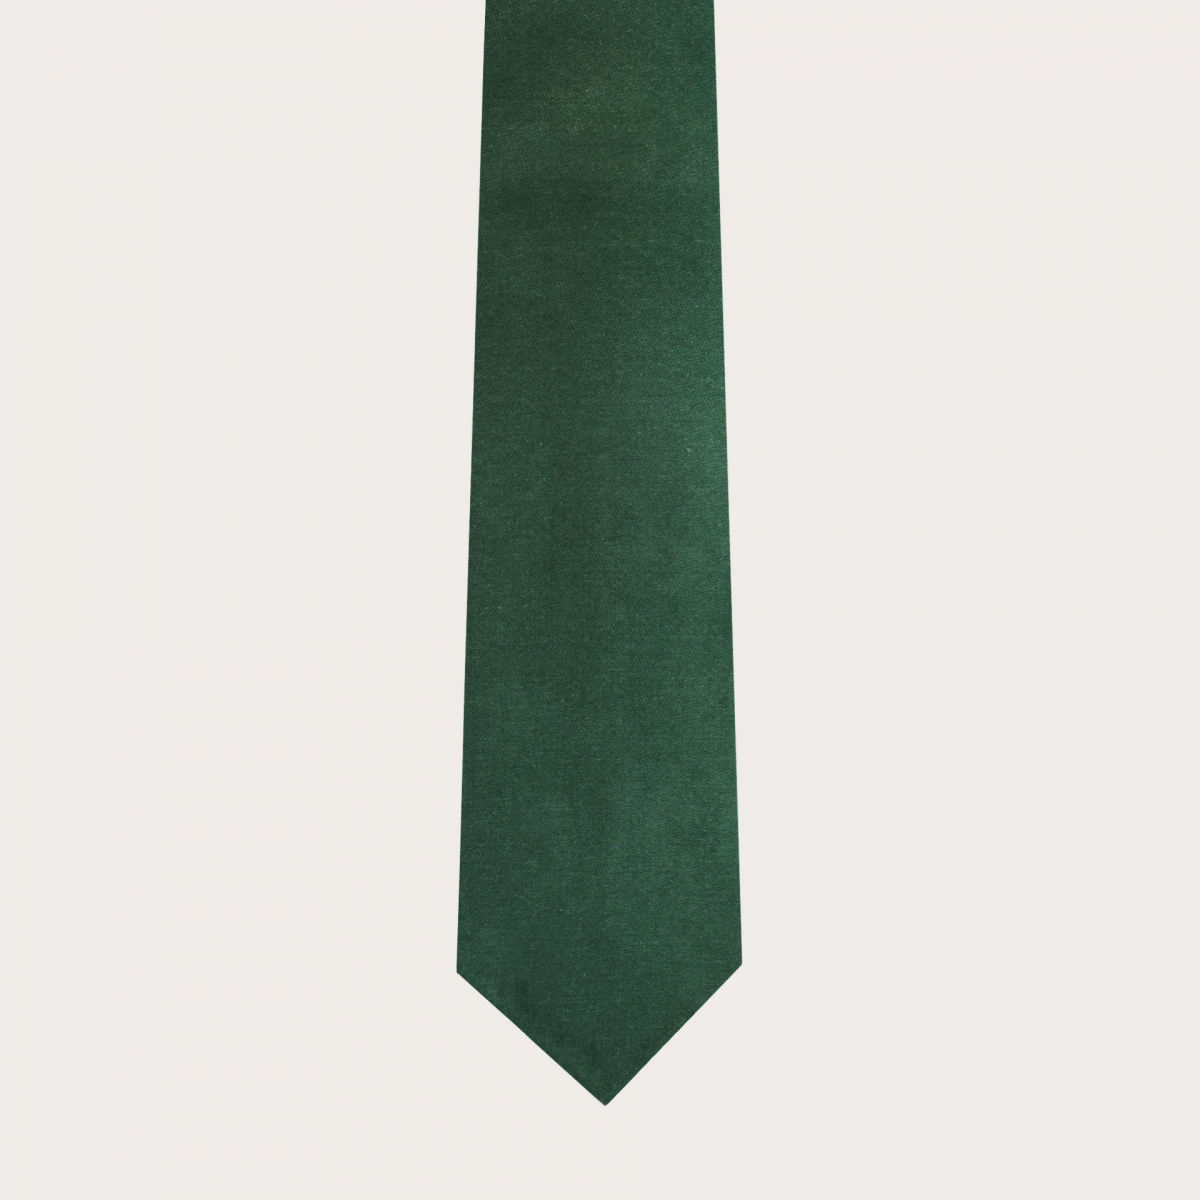 Cravatta sfoderata in lana e canapa, verde